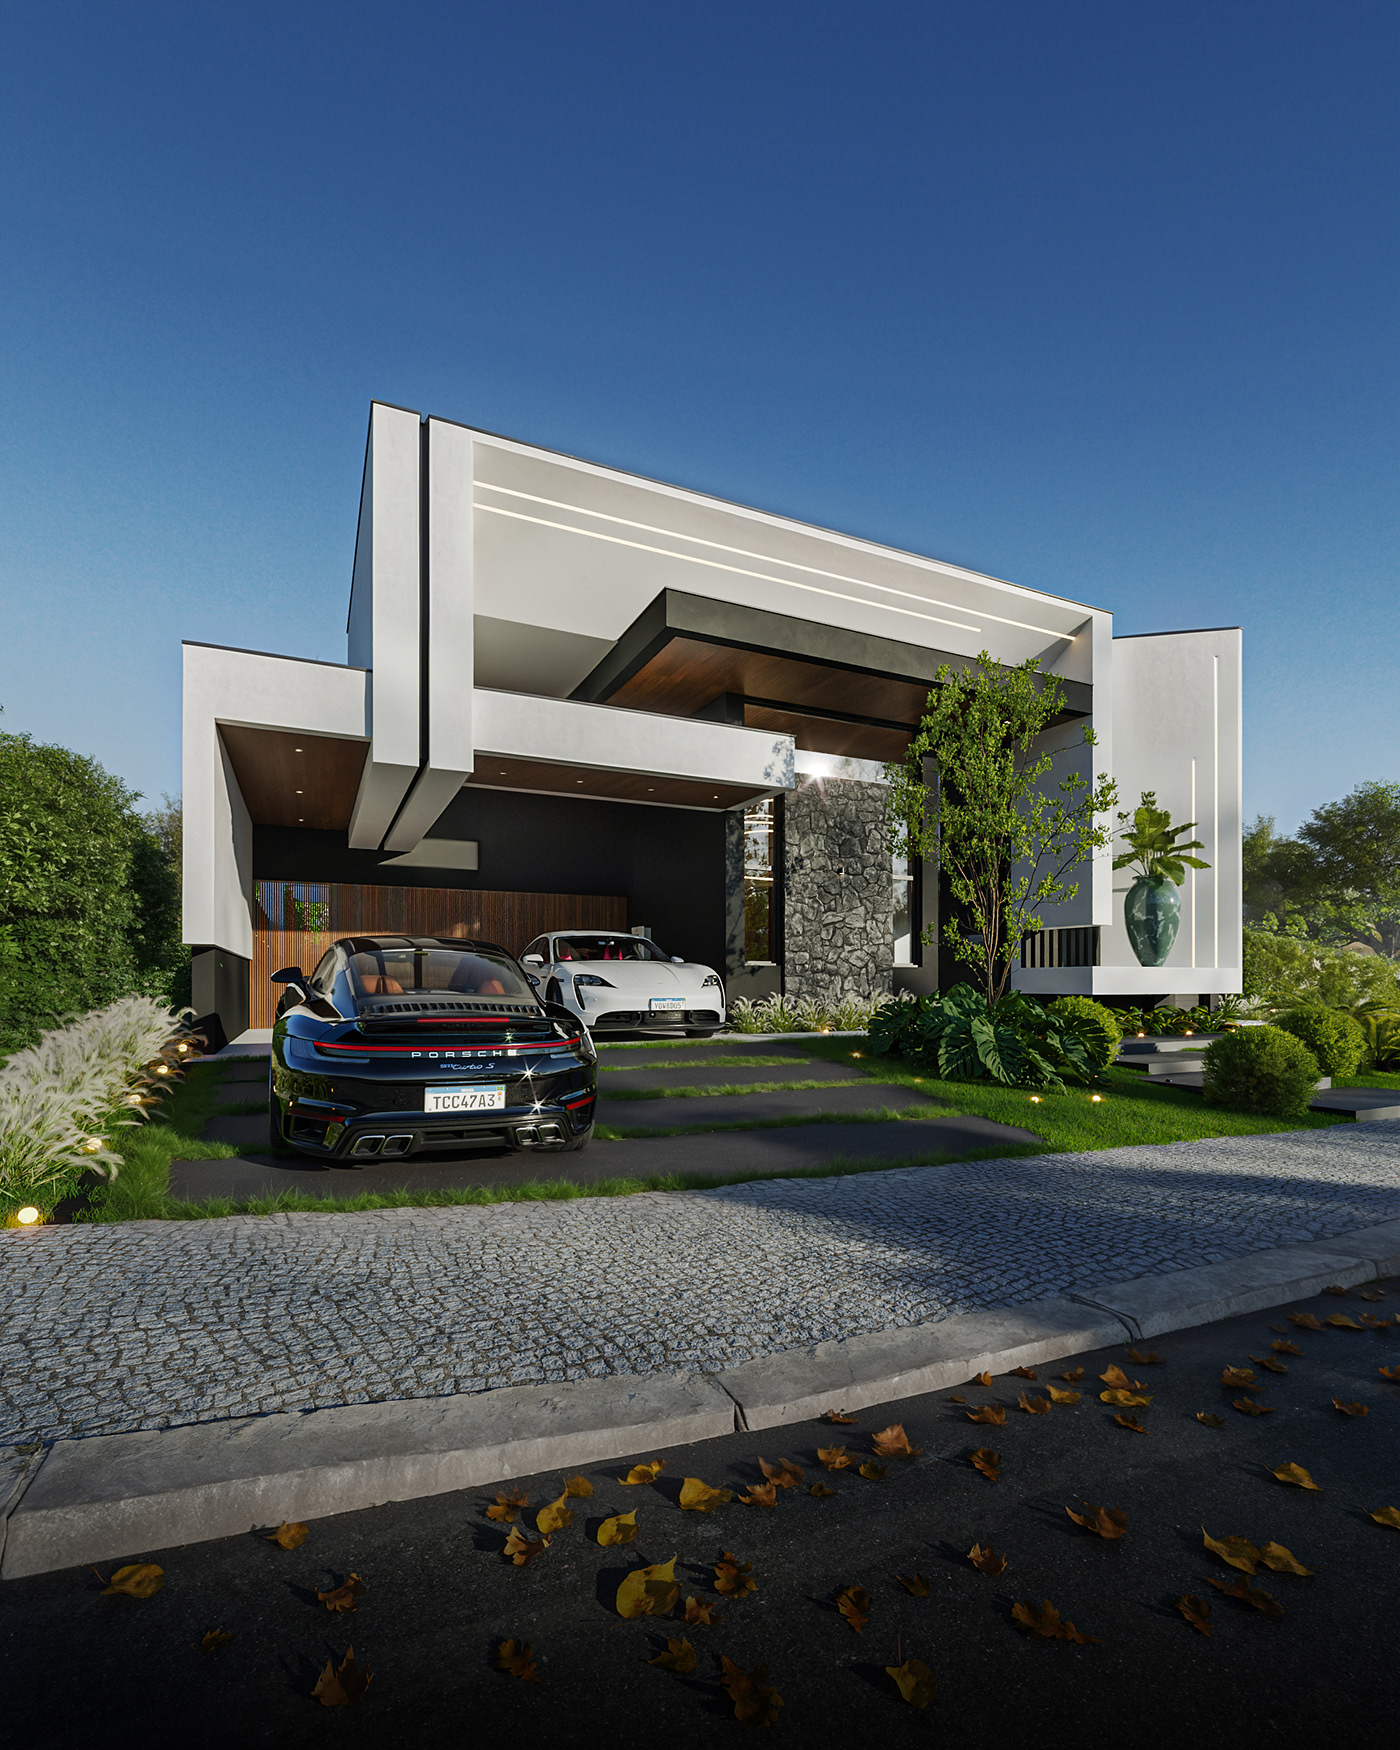 3ds max architecture Render visualization interior design  modern exterior 3D archviz CGI